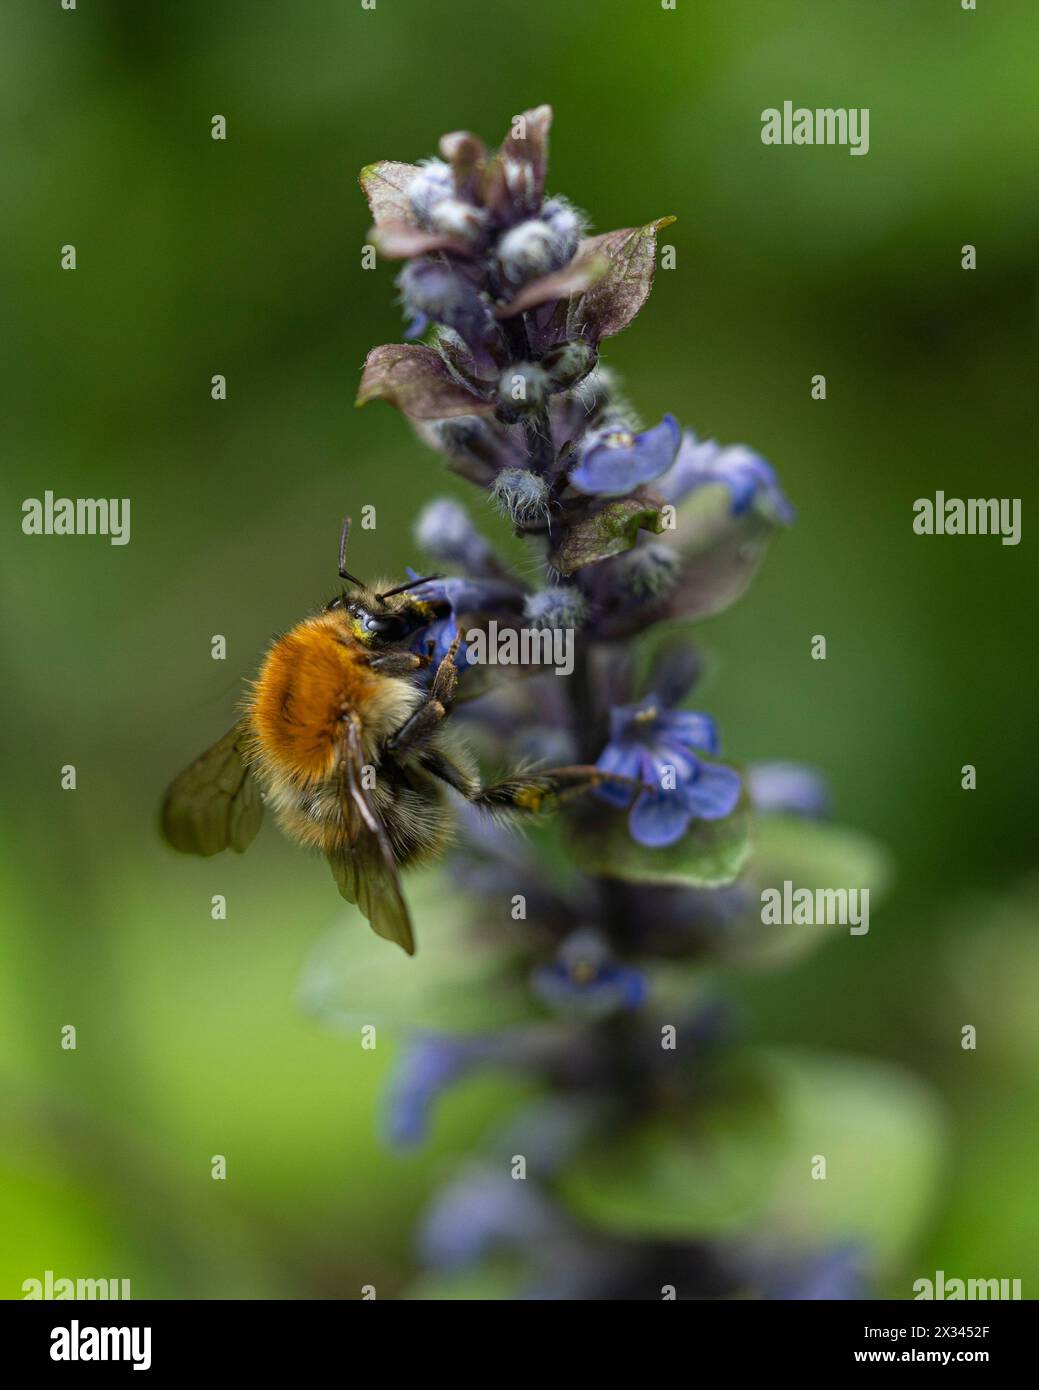 Pays, Ville, 2022-12-31. Un bumblebee gira intorno a un flugelhorn strisciante, prima di prendere il suo nettare da esso. Fotografia di Valentin Gensse / Collectif Foto Stock